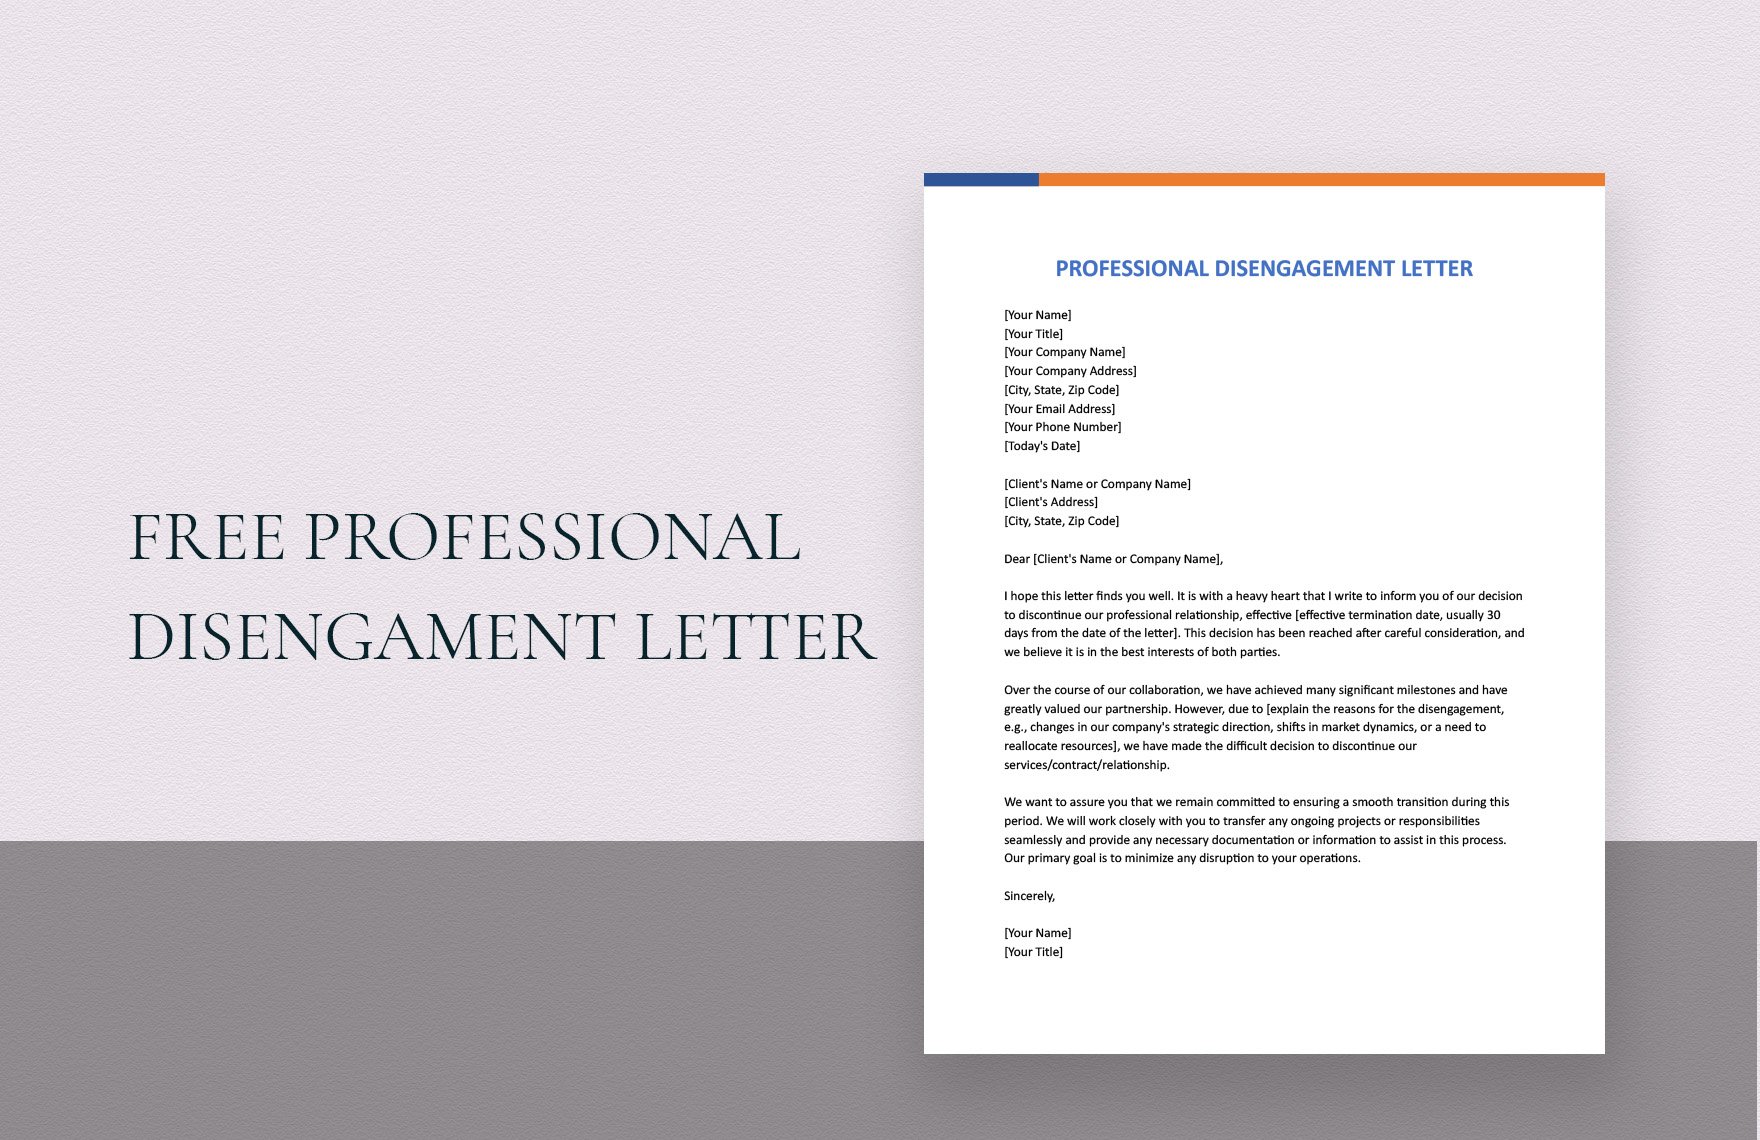 Professional Disengagement Letter